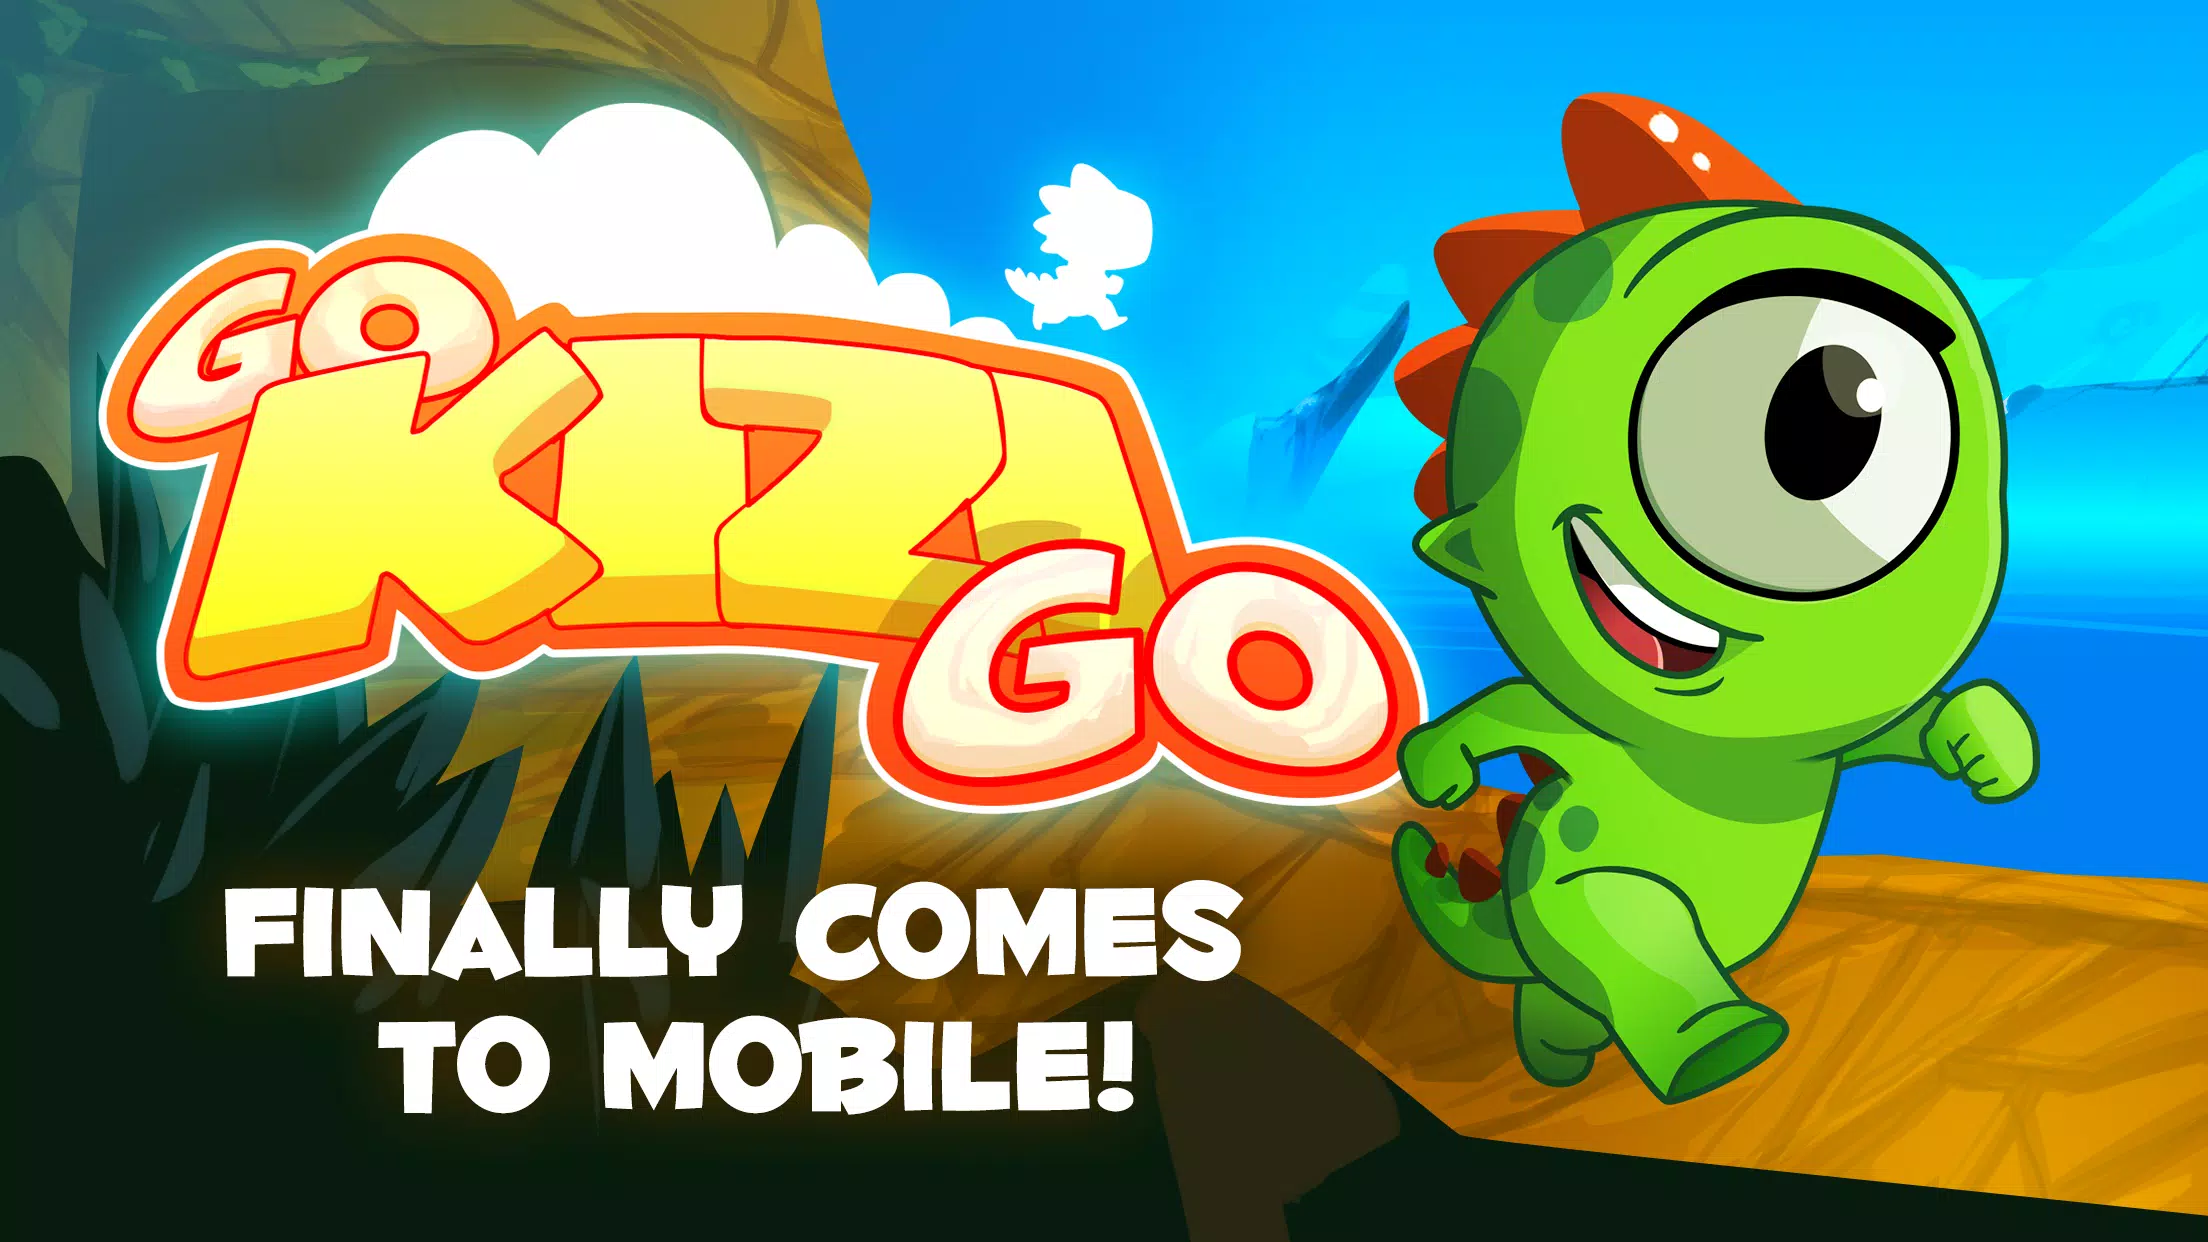 Download do APK de Go Kizi Go - Runner by Kizi para Android